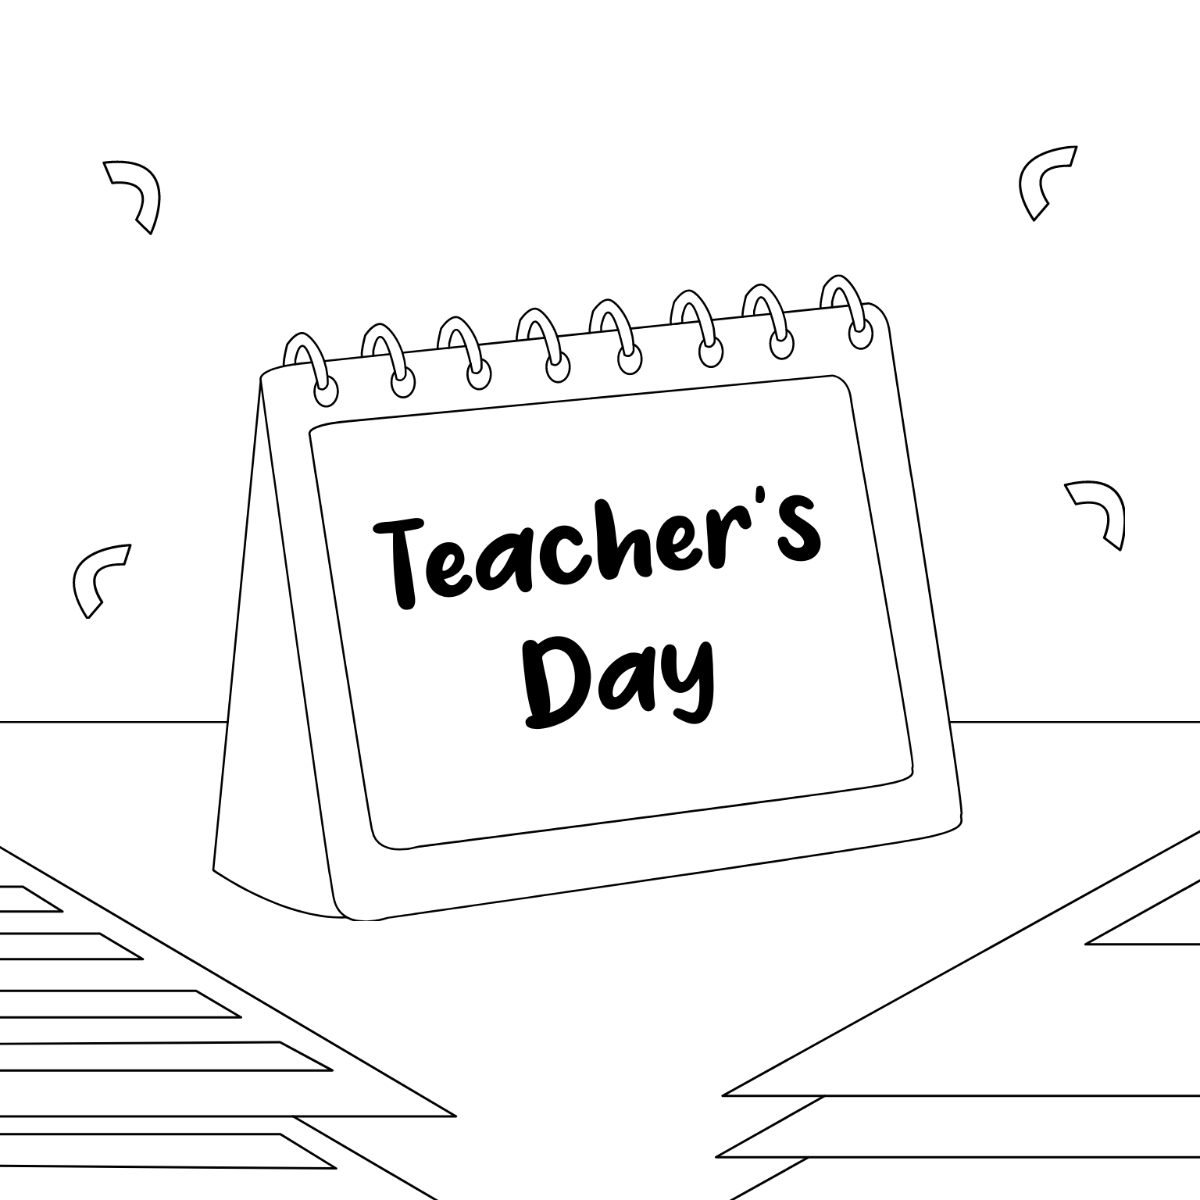 Teachers Day Calendar Drawing Template